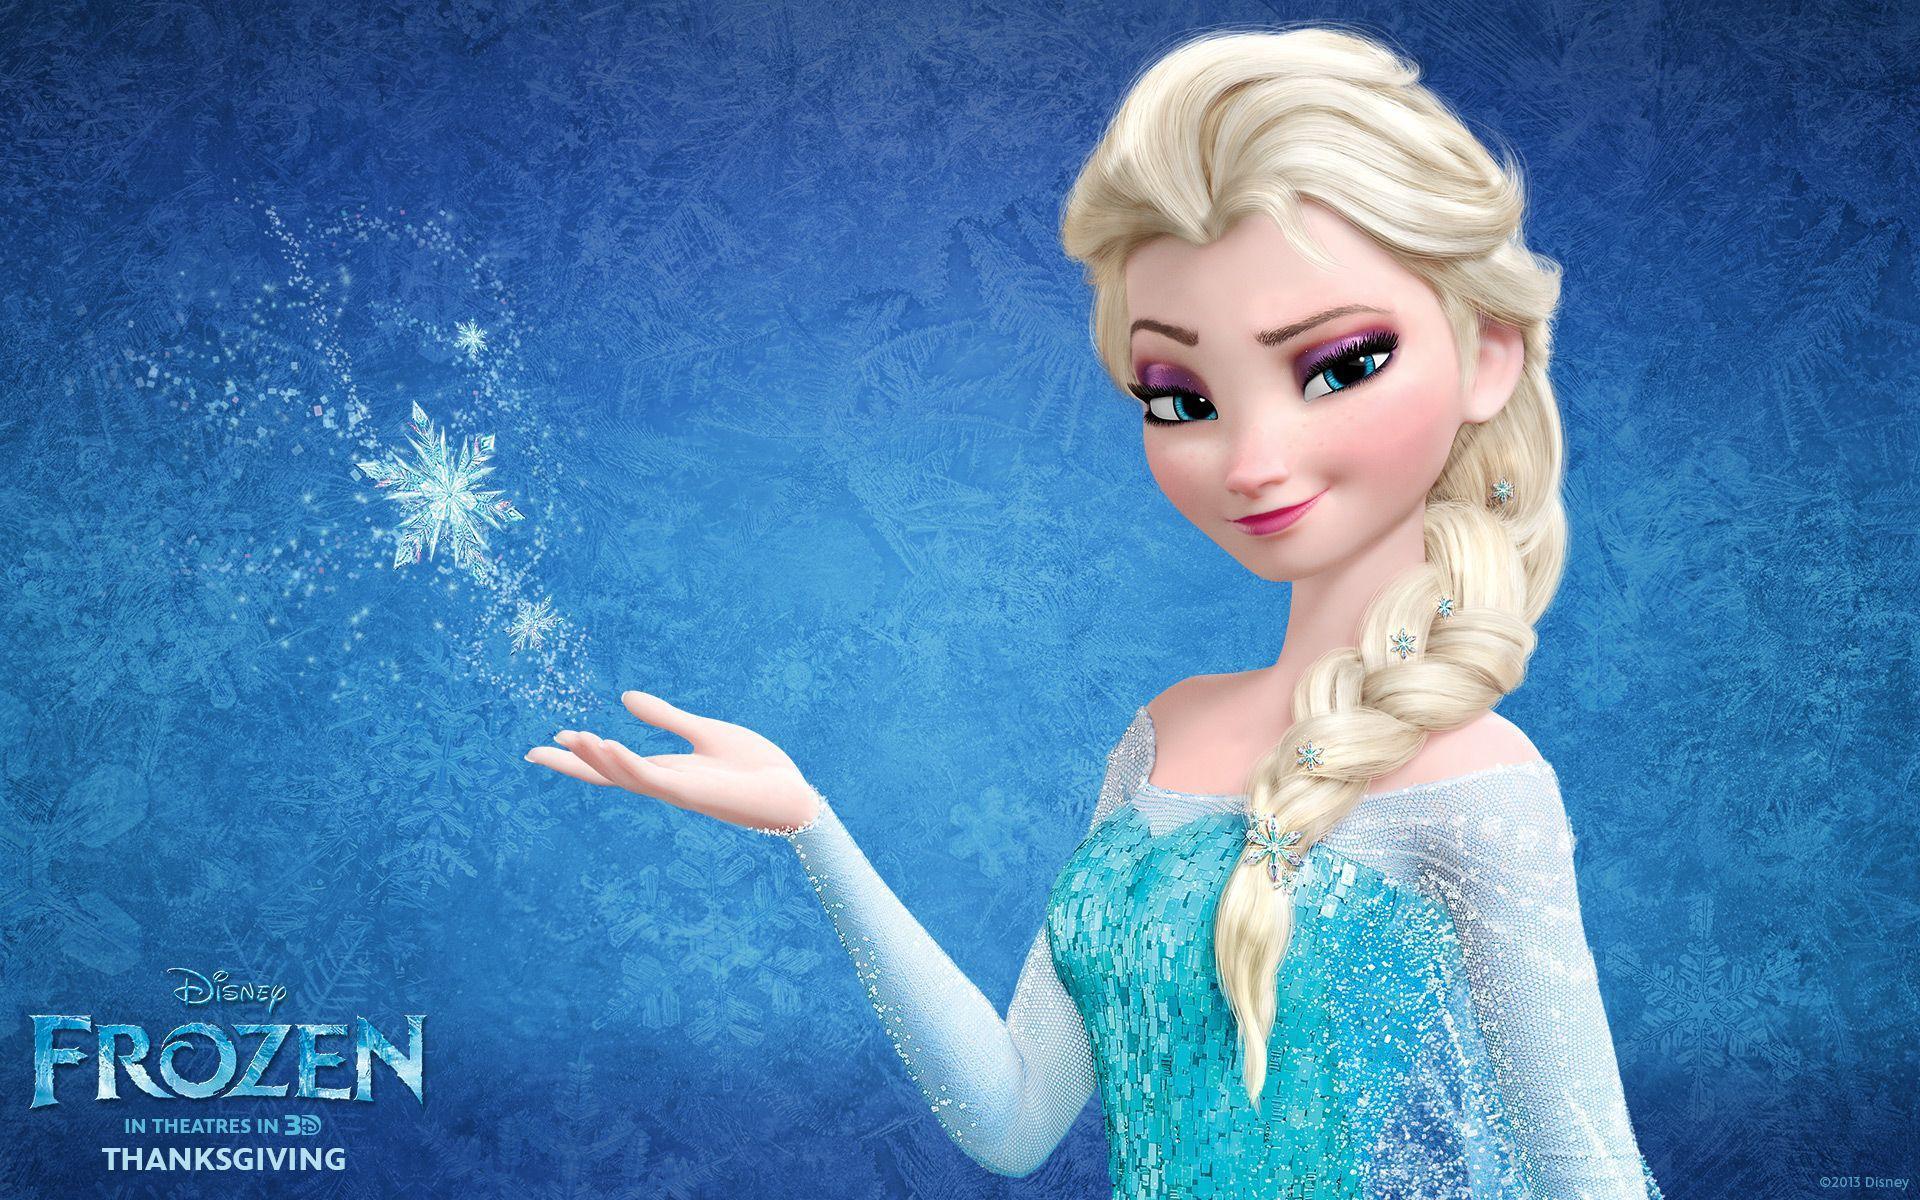 Snow Queen Elsa in Frozen Wallpapers